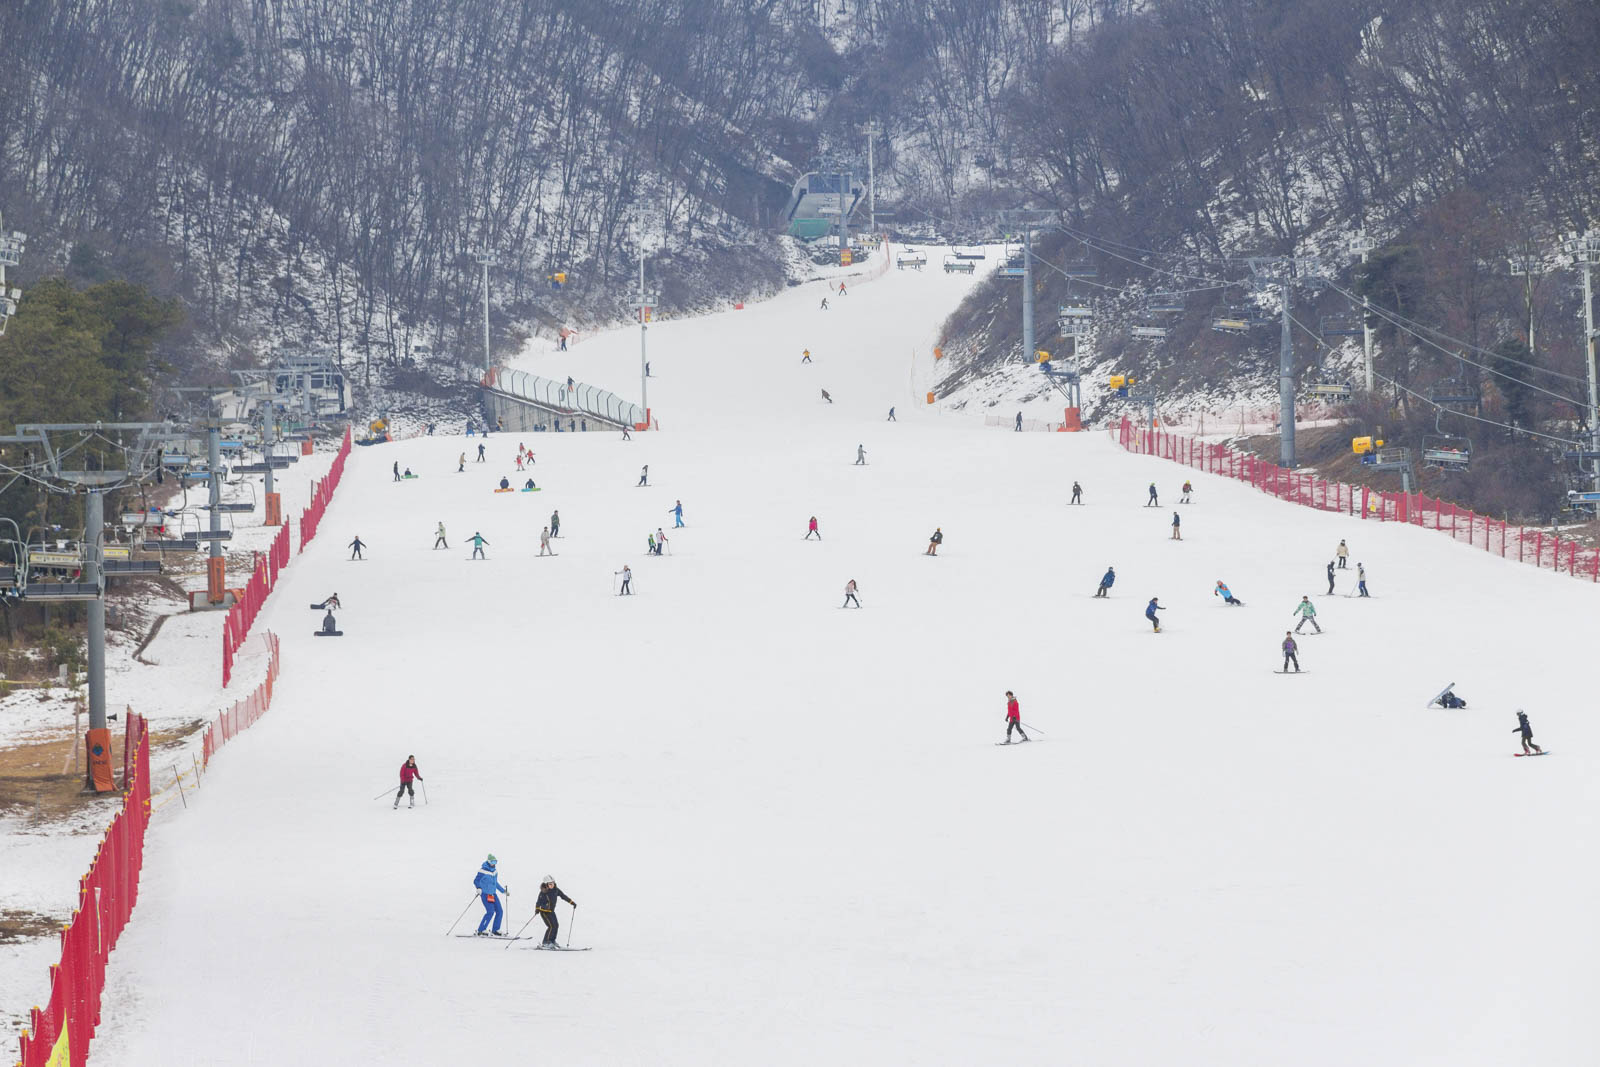 Skiing at Jisan Forest Ski Resort, South Korea